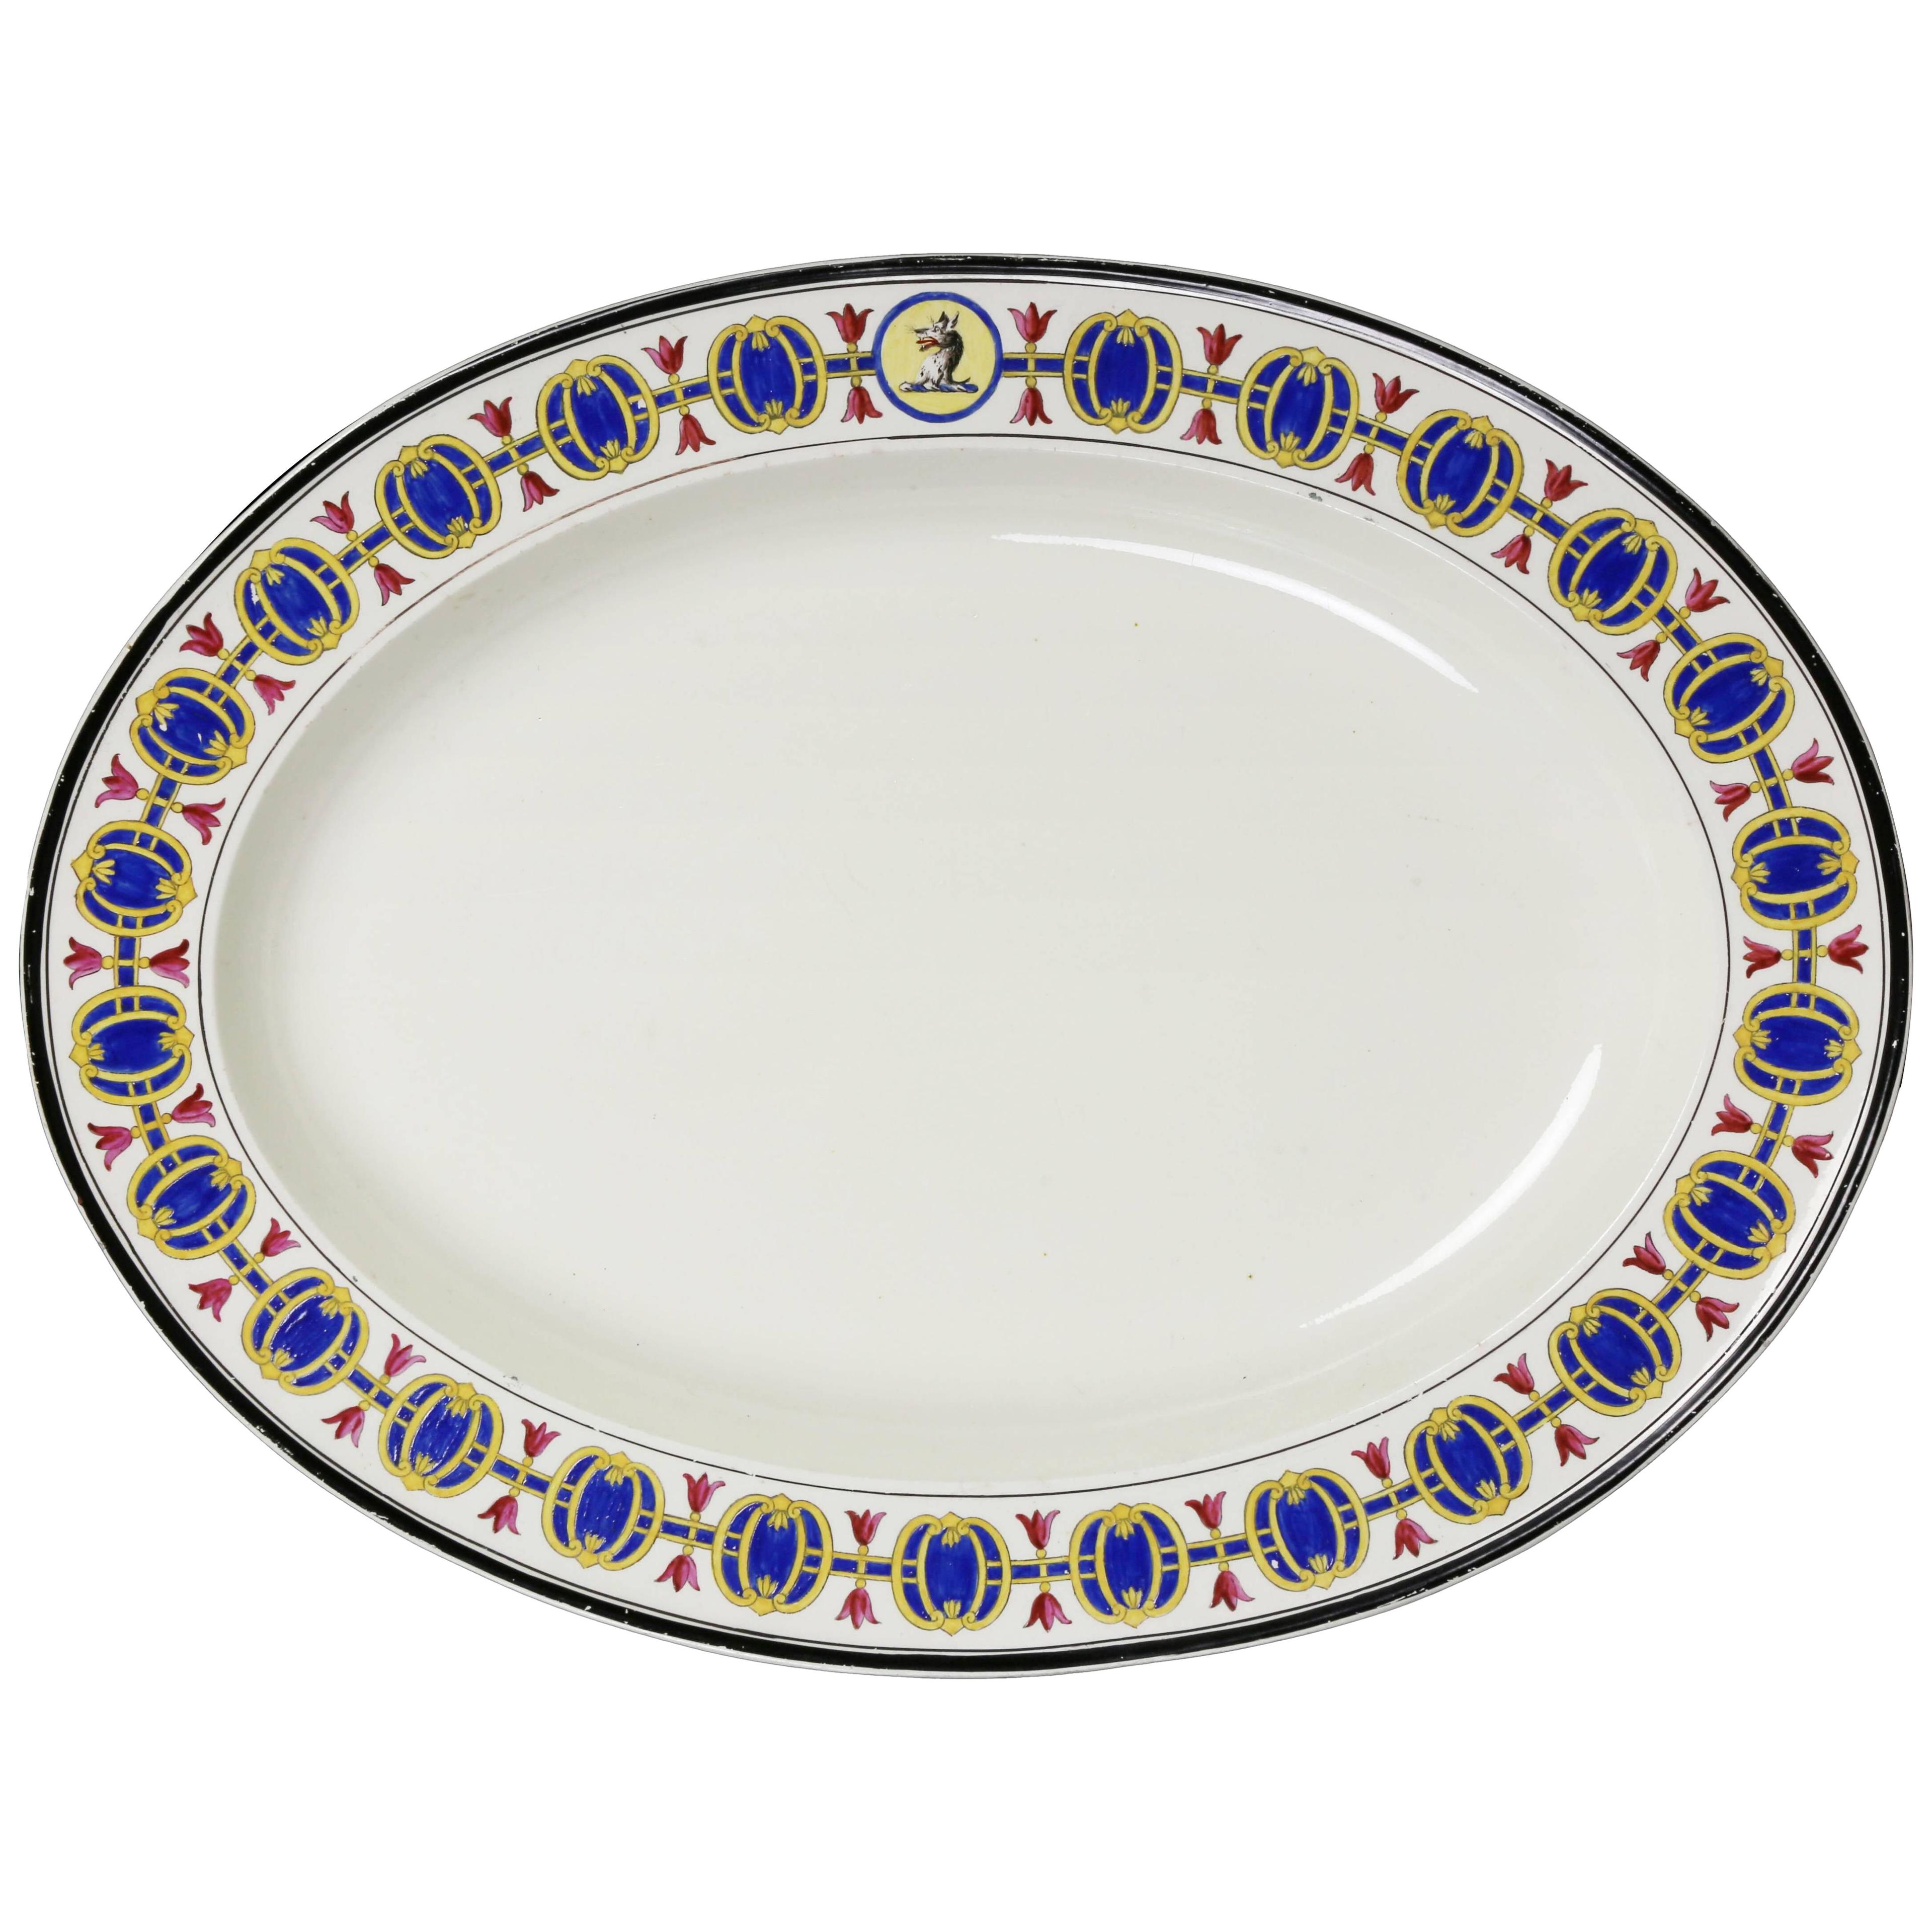 Wedgwood Creamware Platter